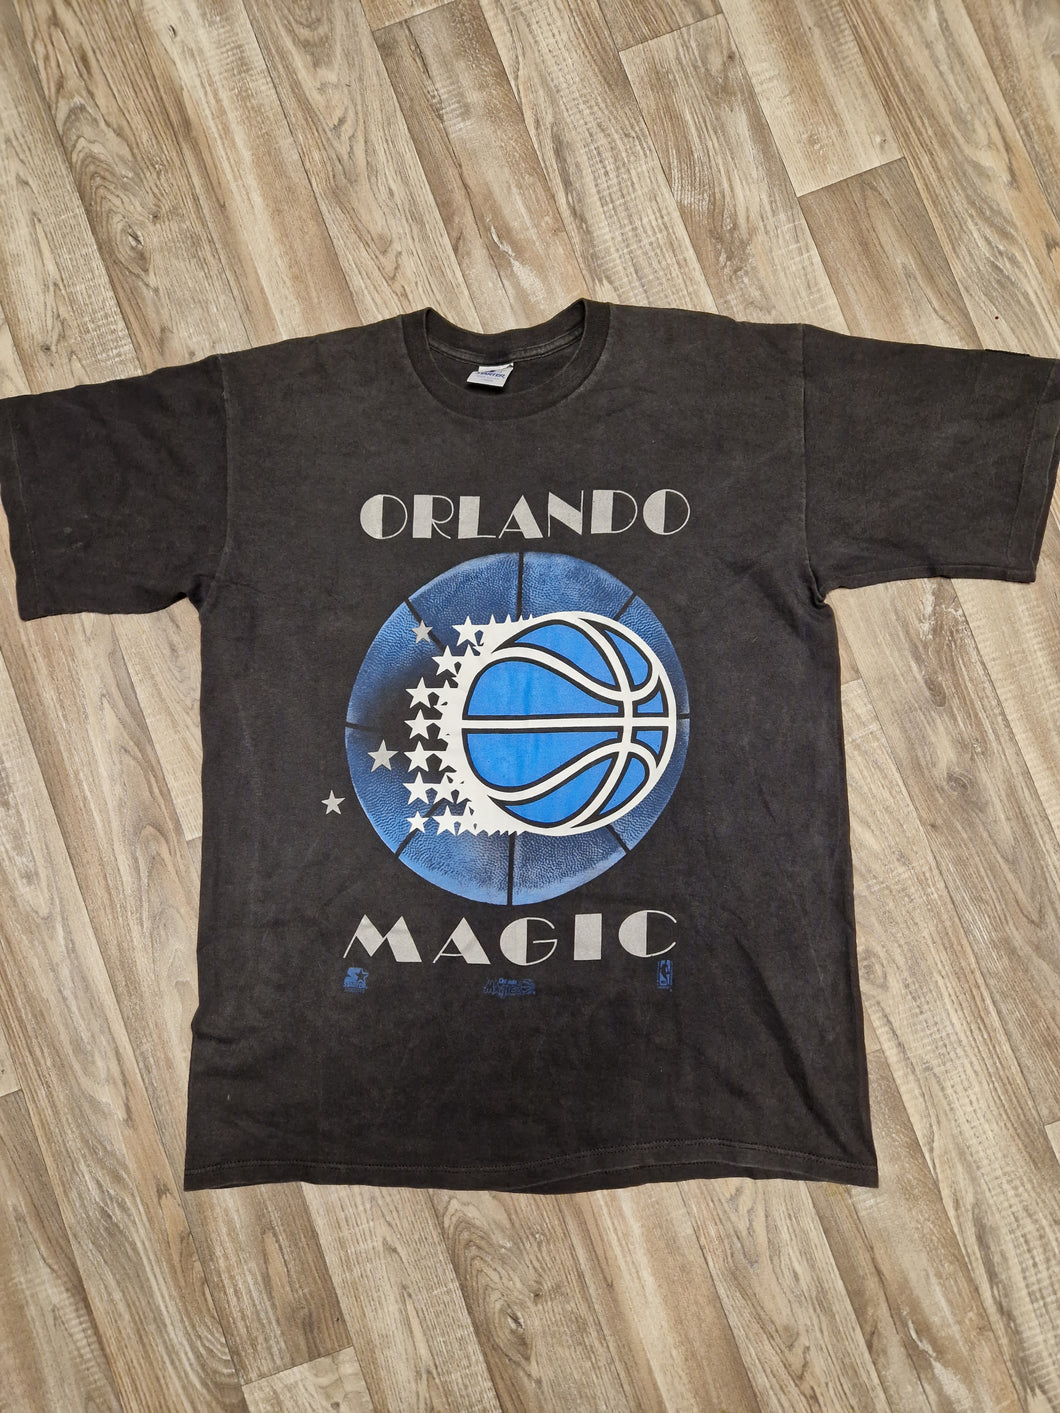 Orlando Magic T-Shirt Size Large